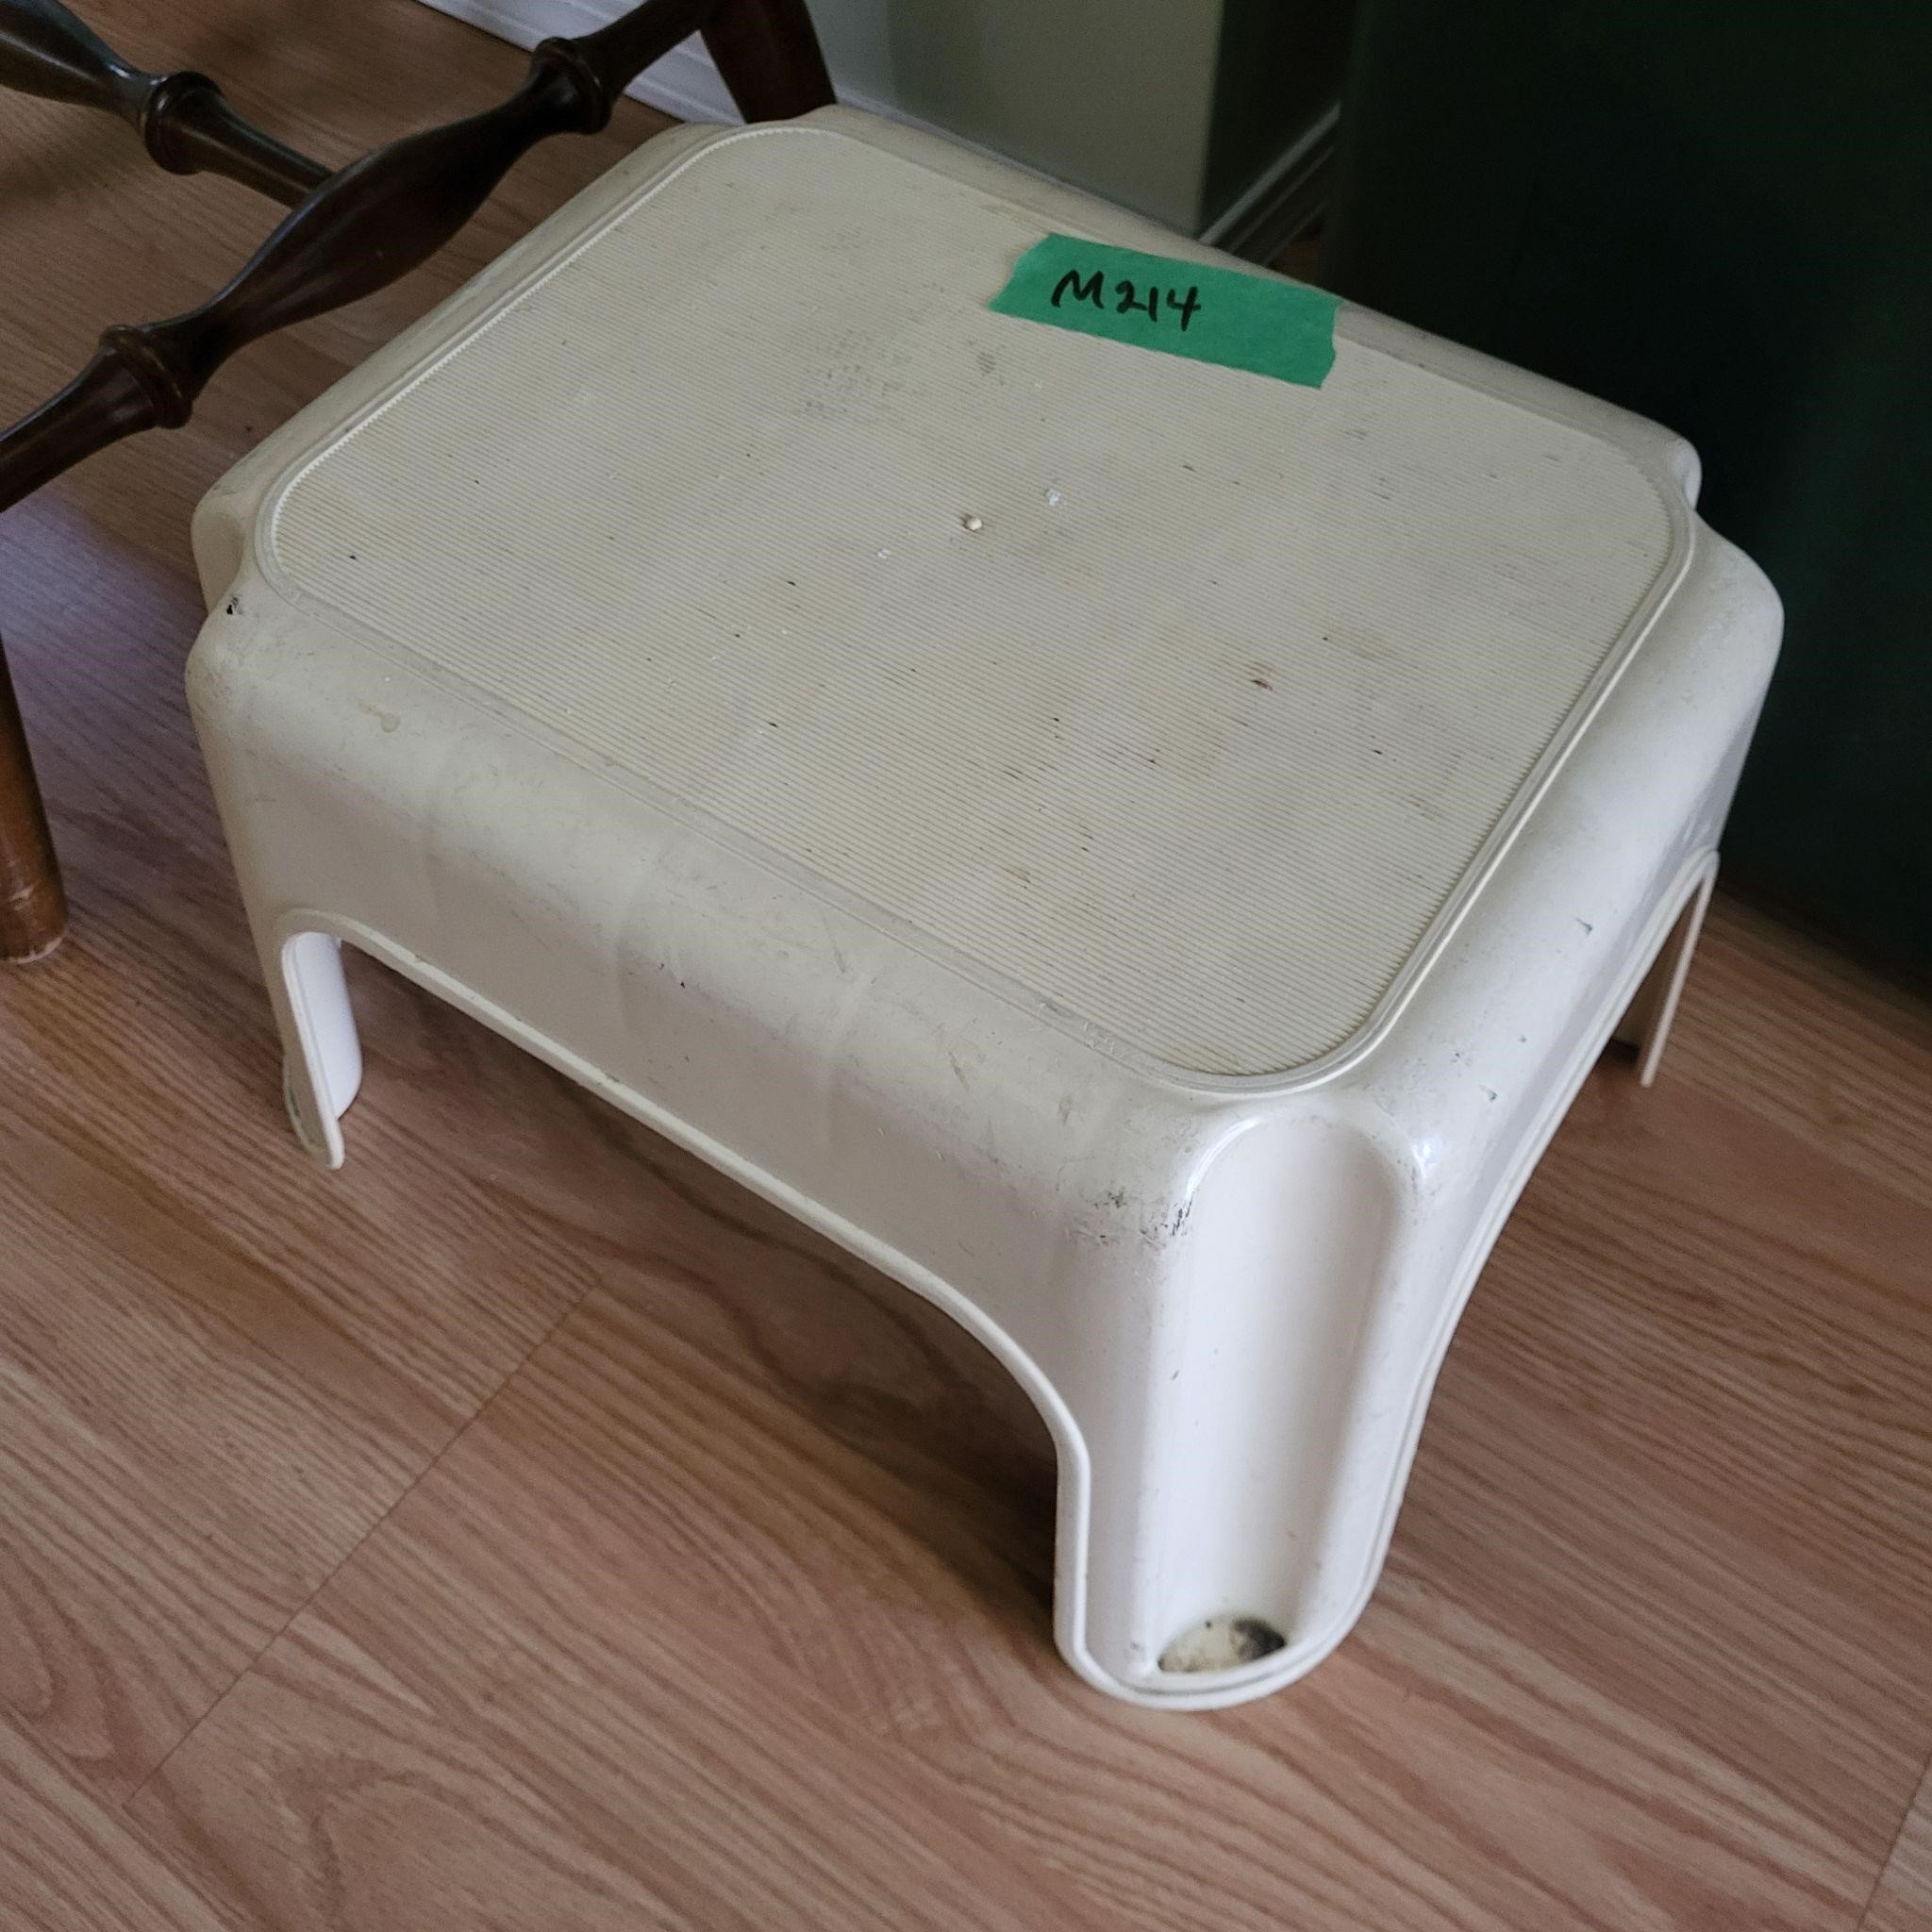 M214 White plastic stool